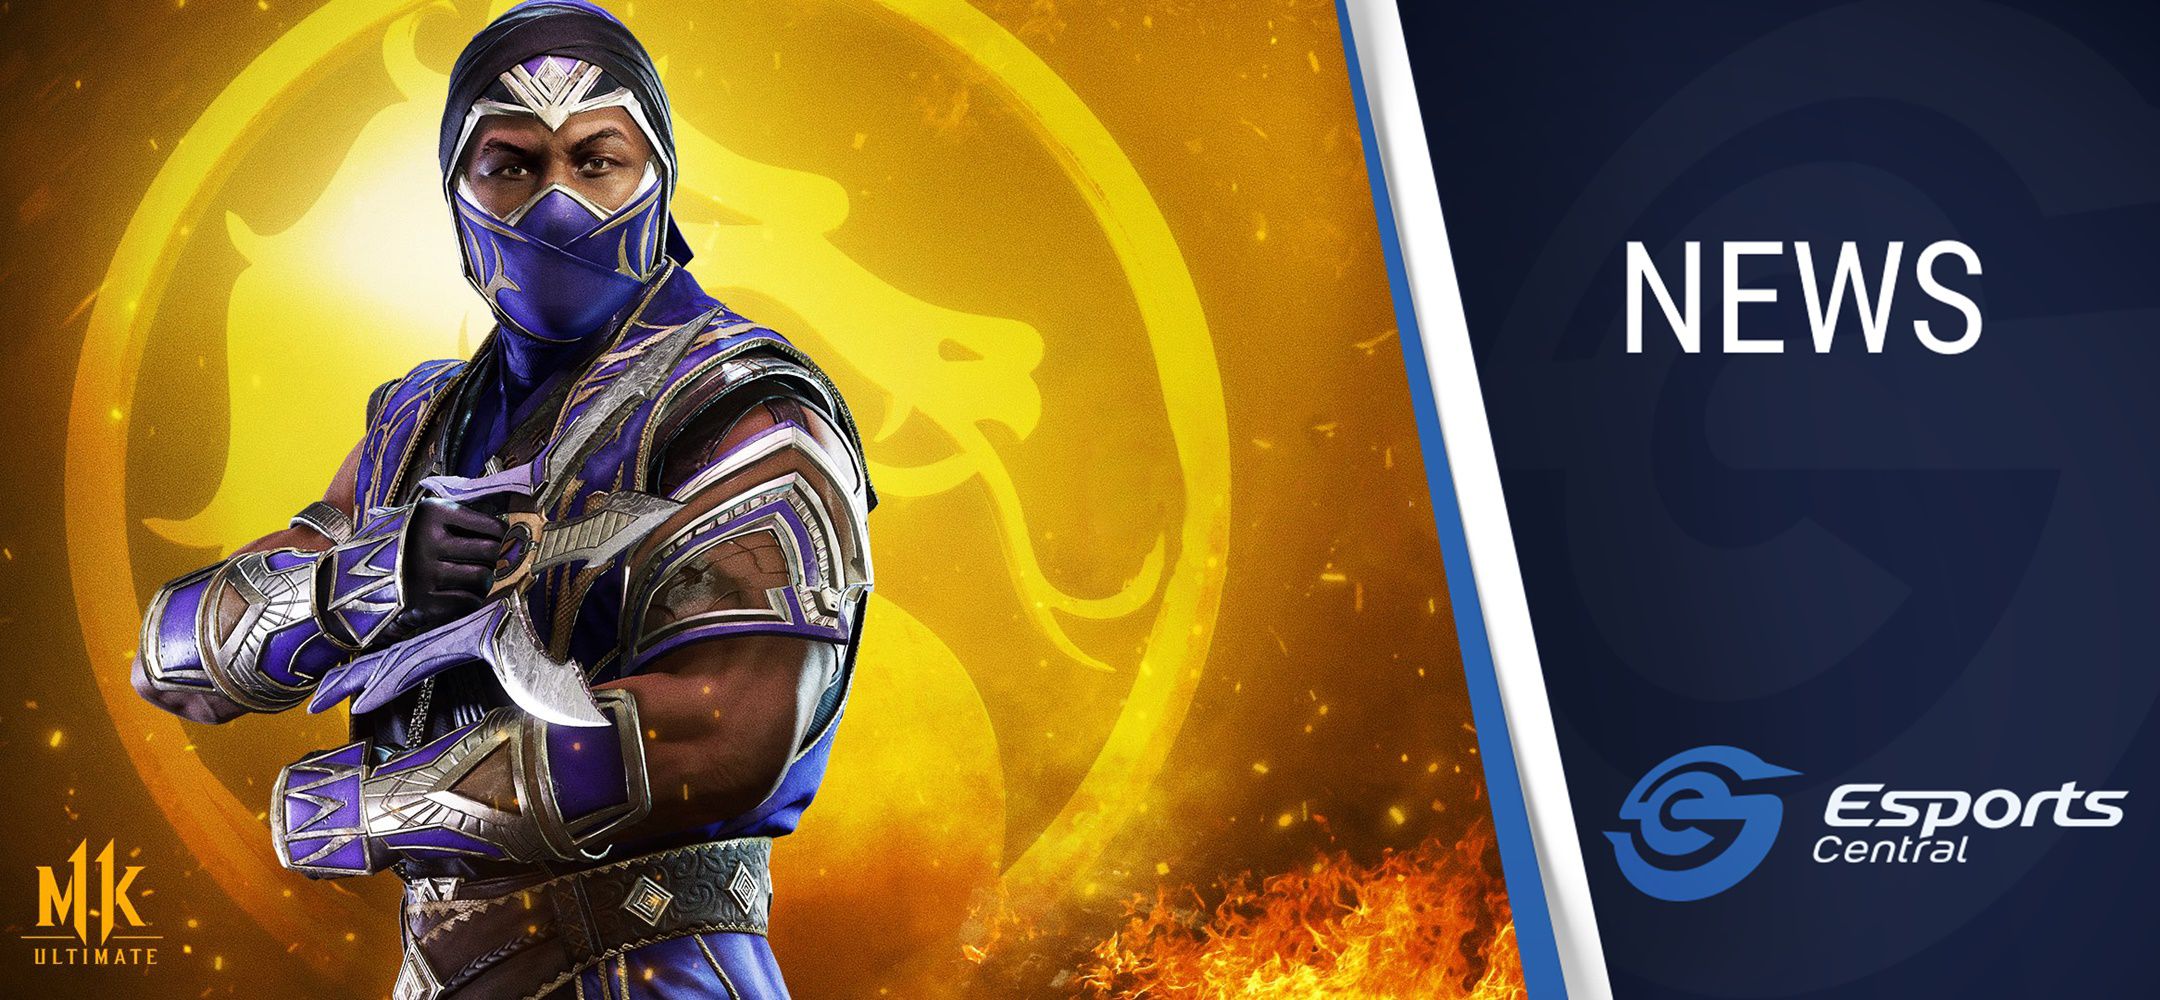 Mortal Kombat 11 Ultimate announced